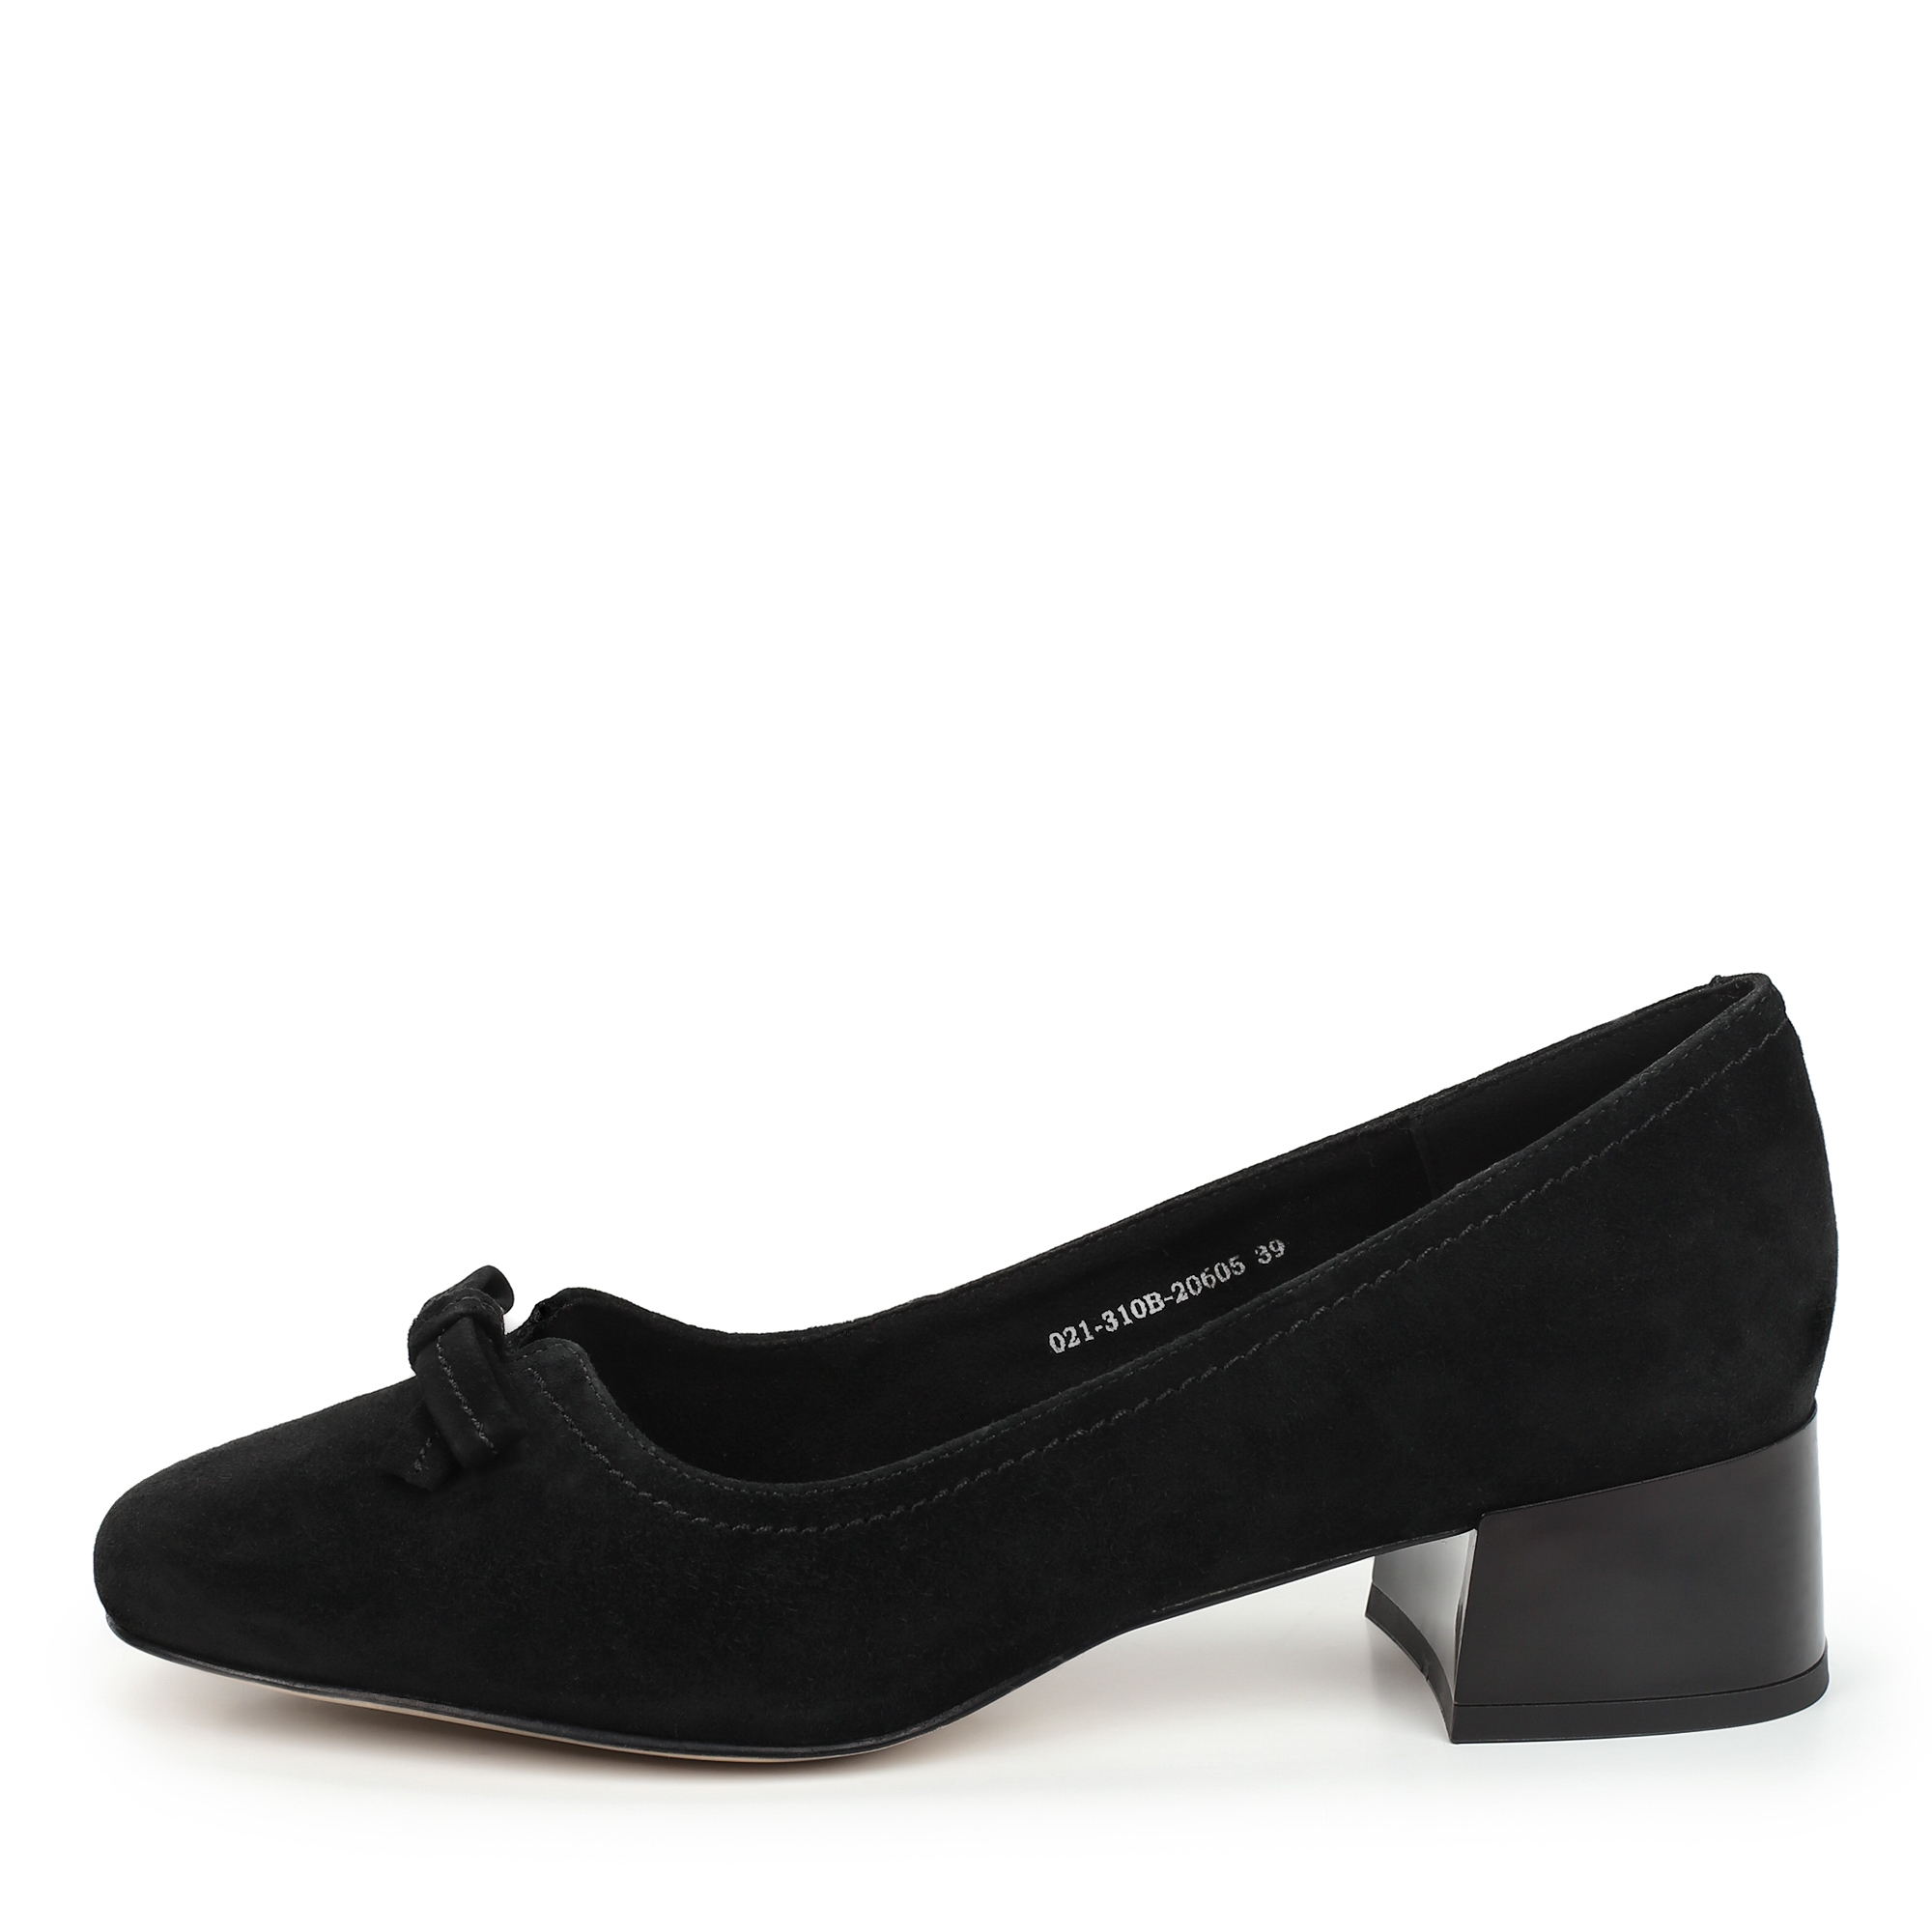 Туфли Thomas Munz 021-310B-20605, цвет черный, размер 39 - фото 1